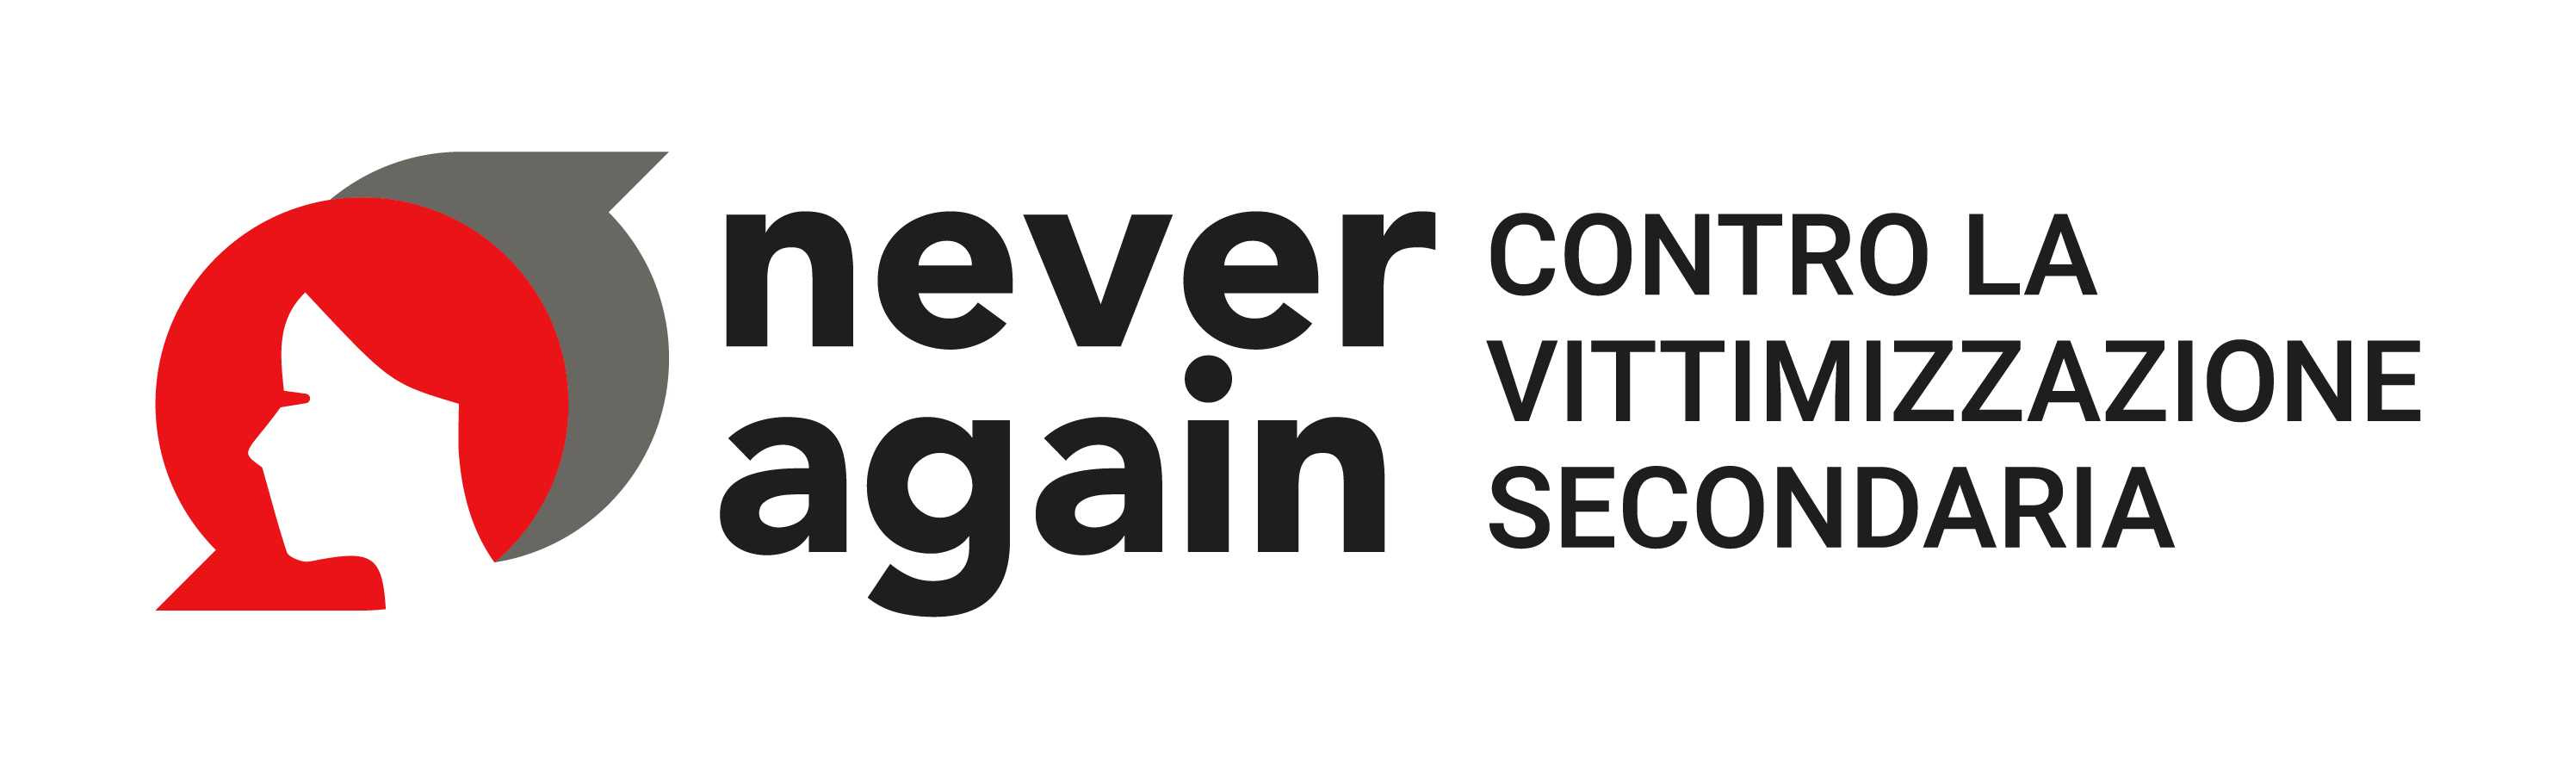 Never Again. Contro la vittimizzazione secondaria - logo